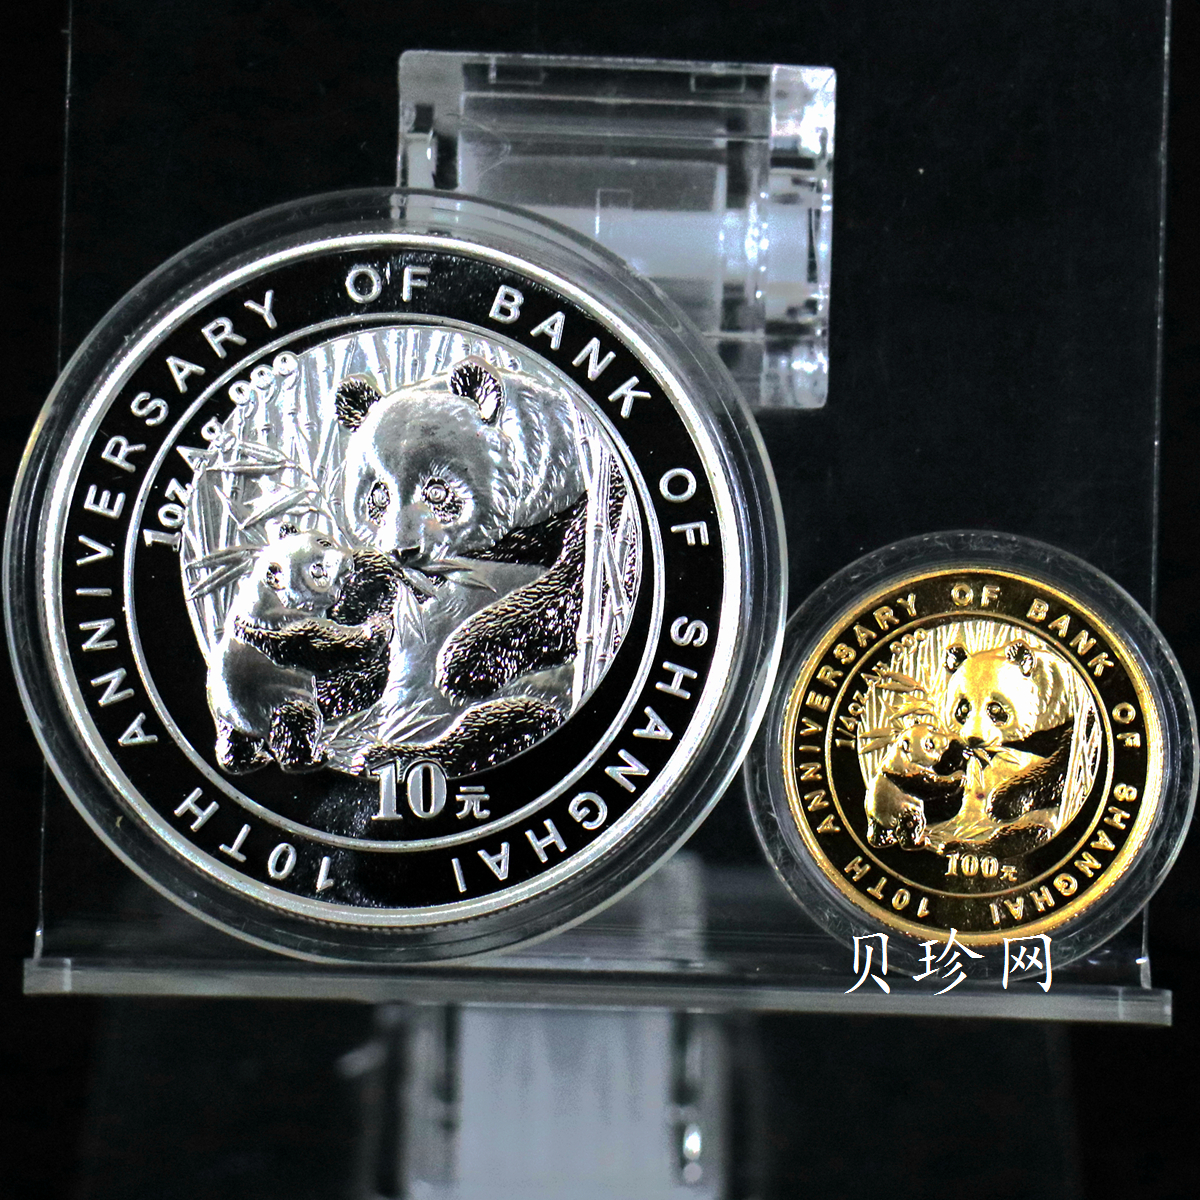 【059060】2005年上海银行成立十周年纪念熊猫加字普制金银币2枚一套